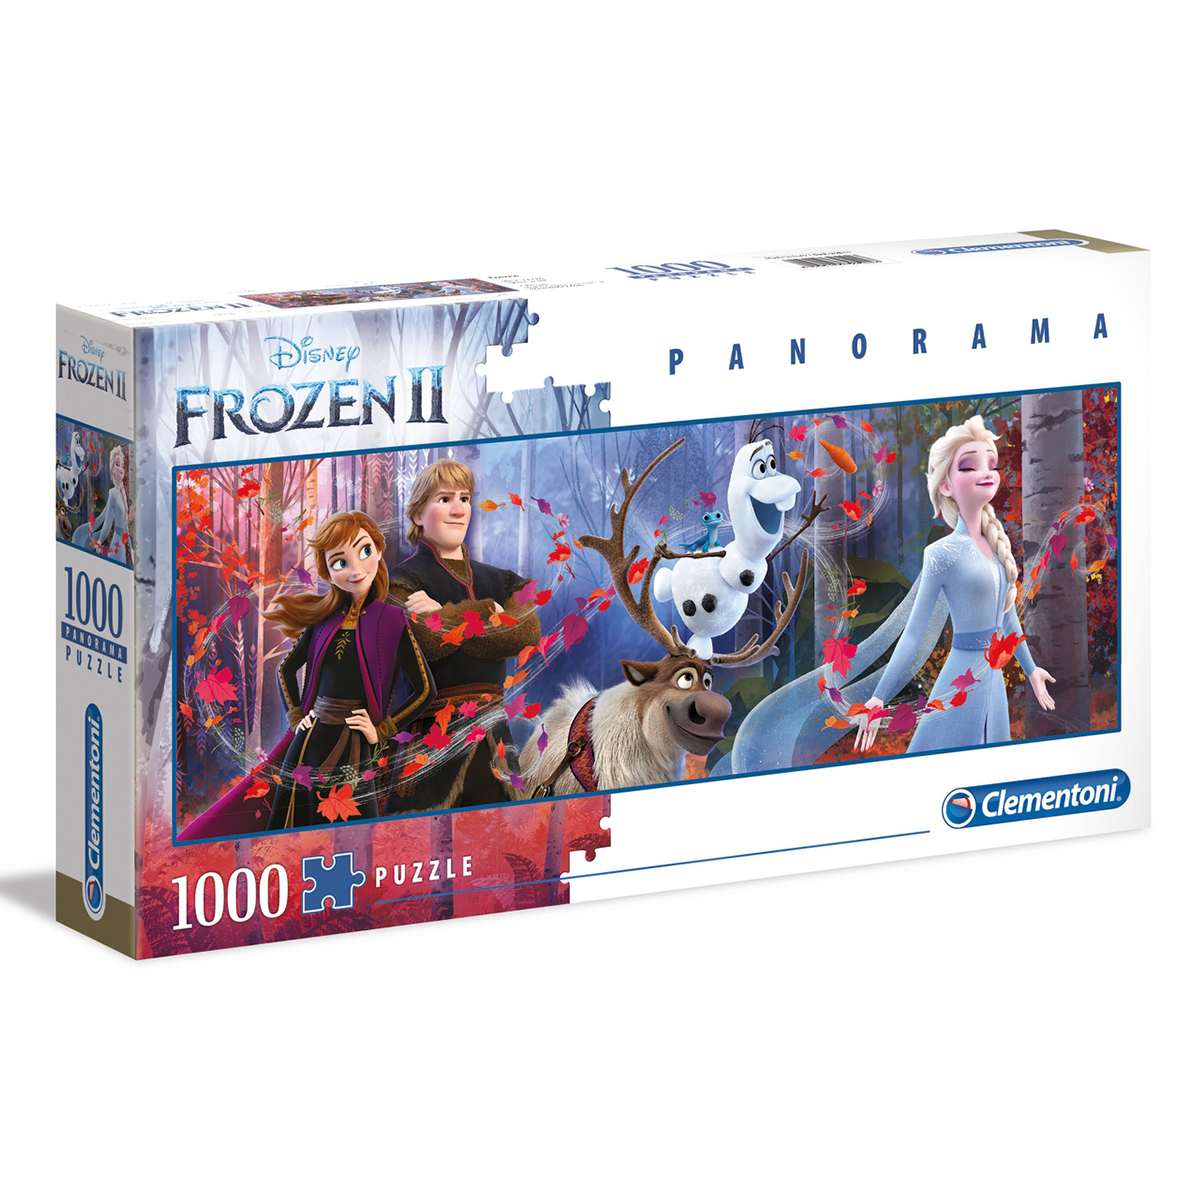 Puzzle Clementoni Frozen Panorama de 1000 piezas